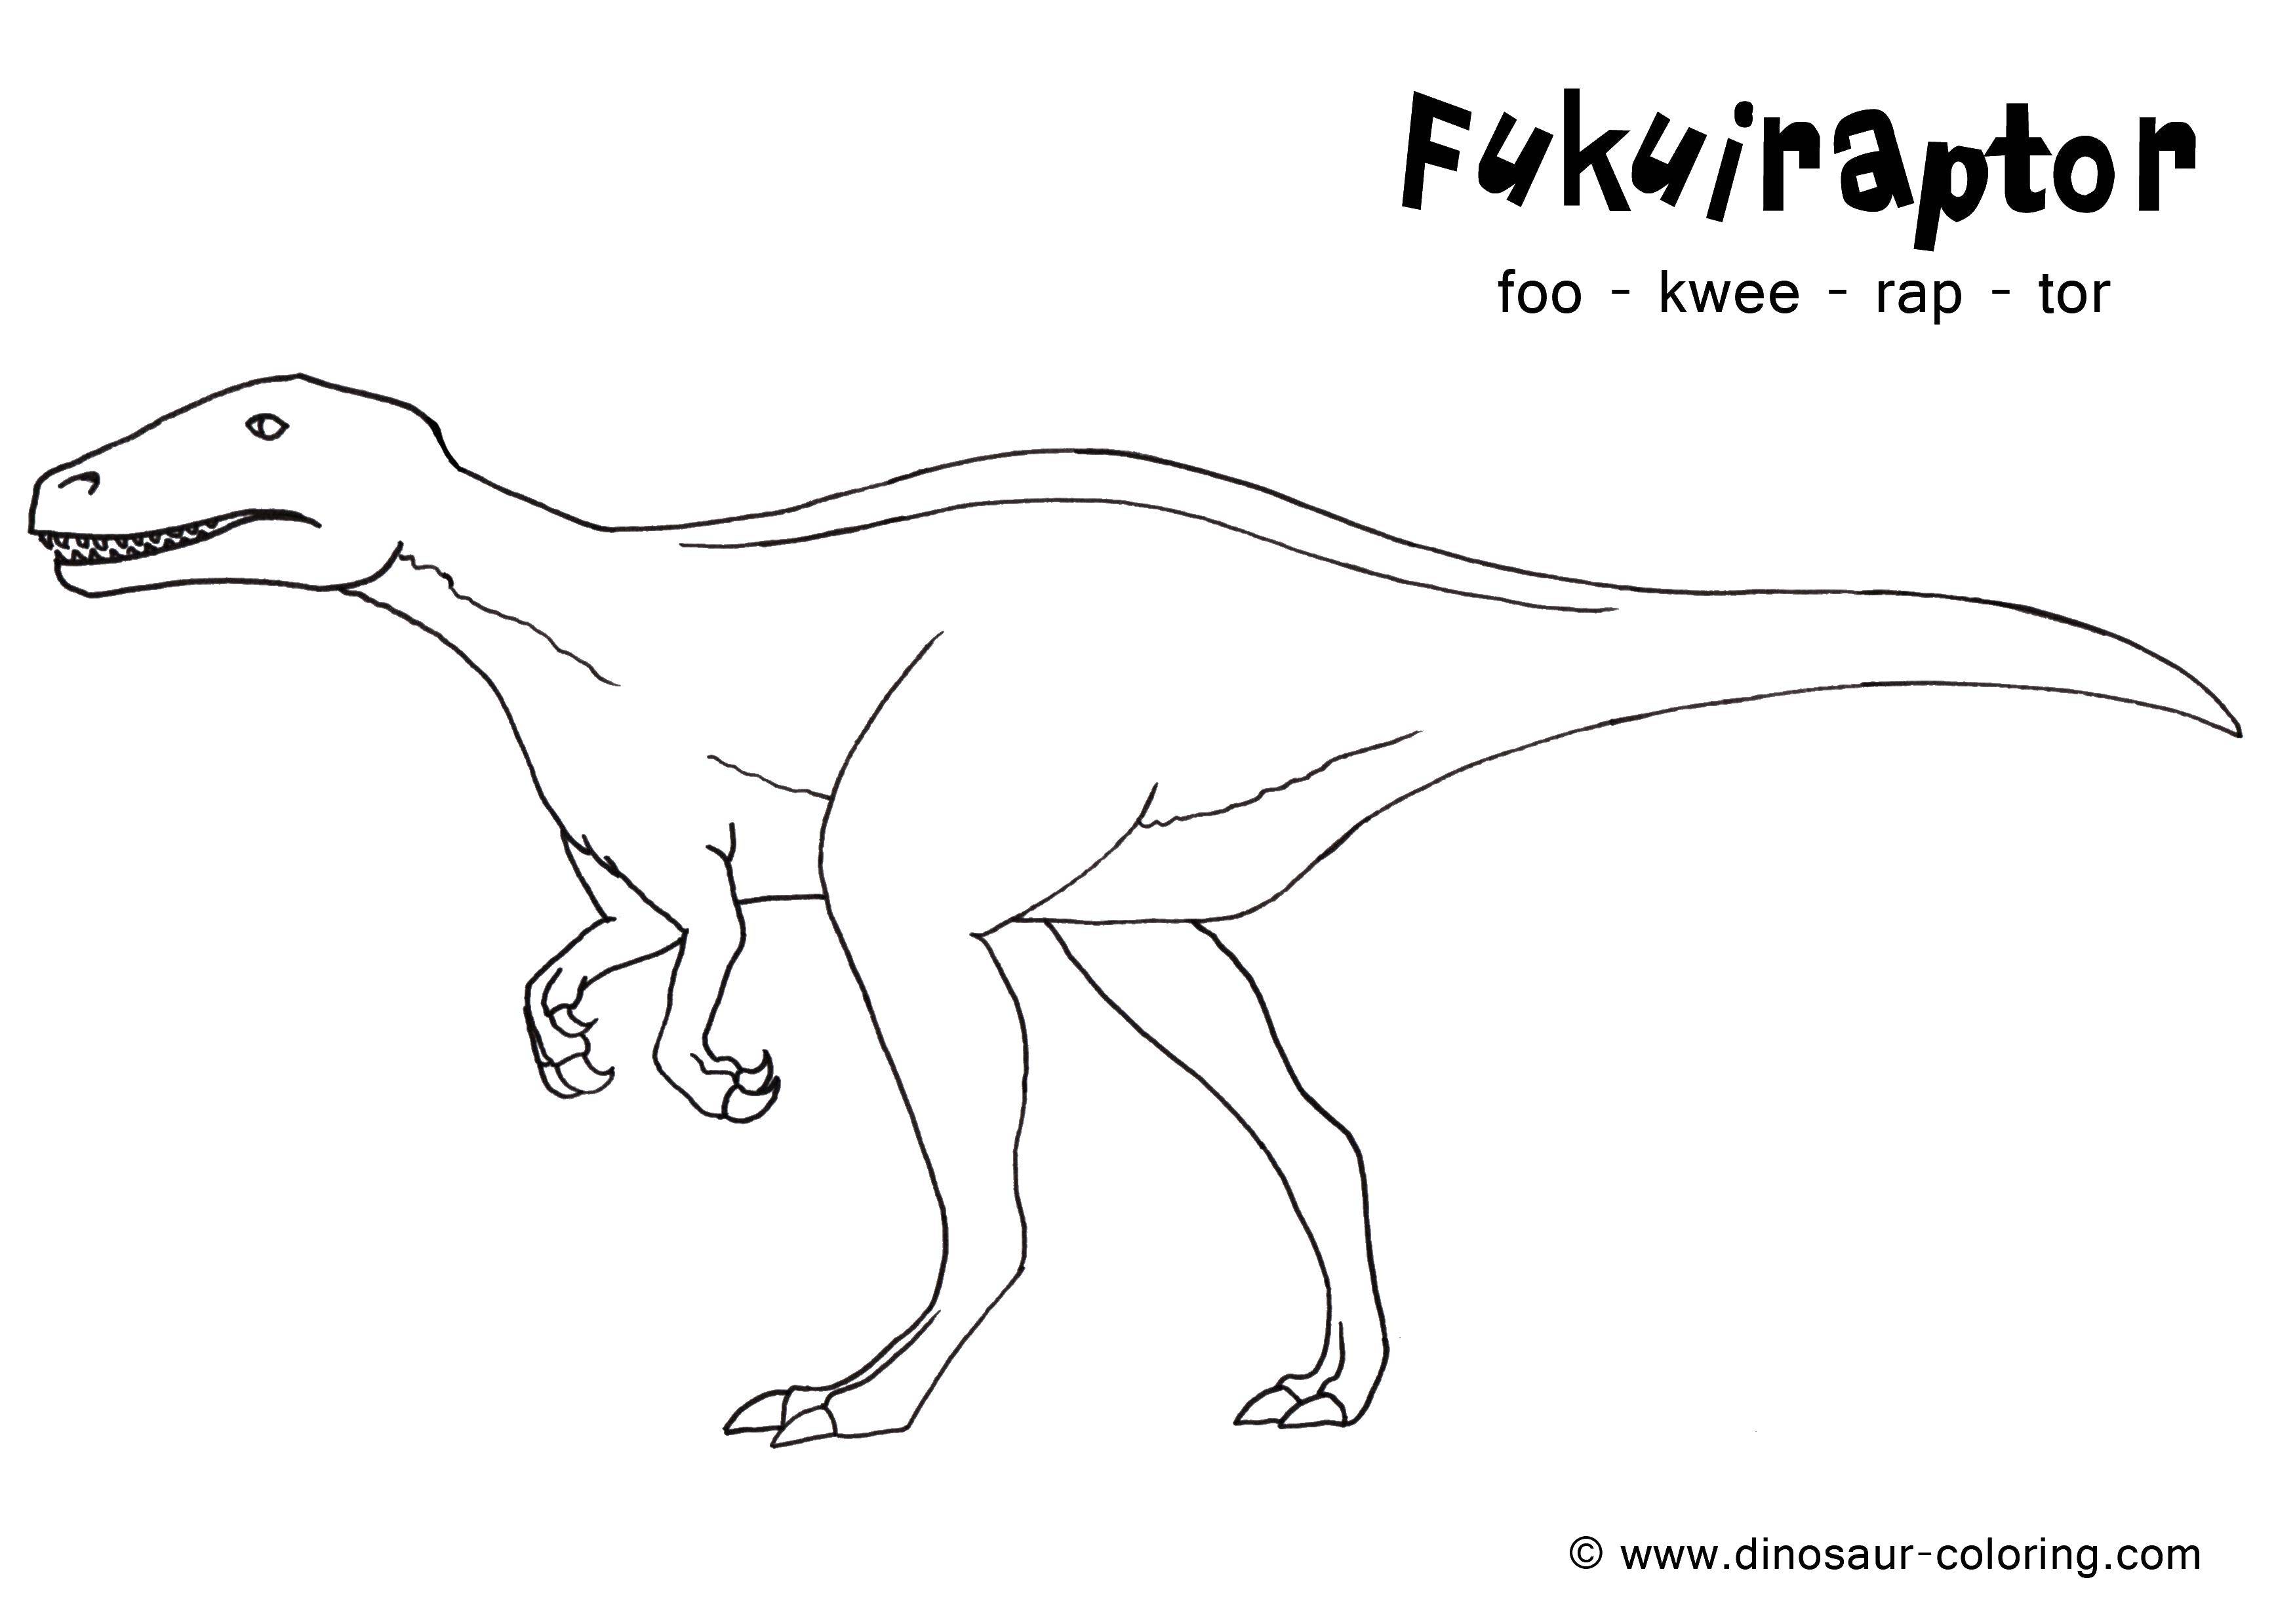 Название: Раскраска Фукураптор. Категория: динозавр. Теги: фукураптор.